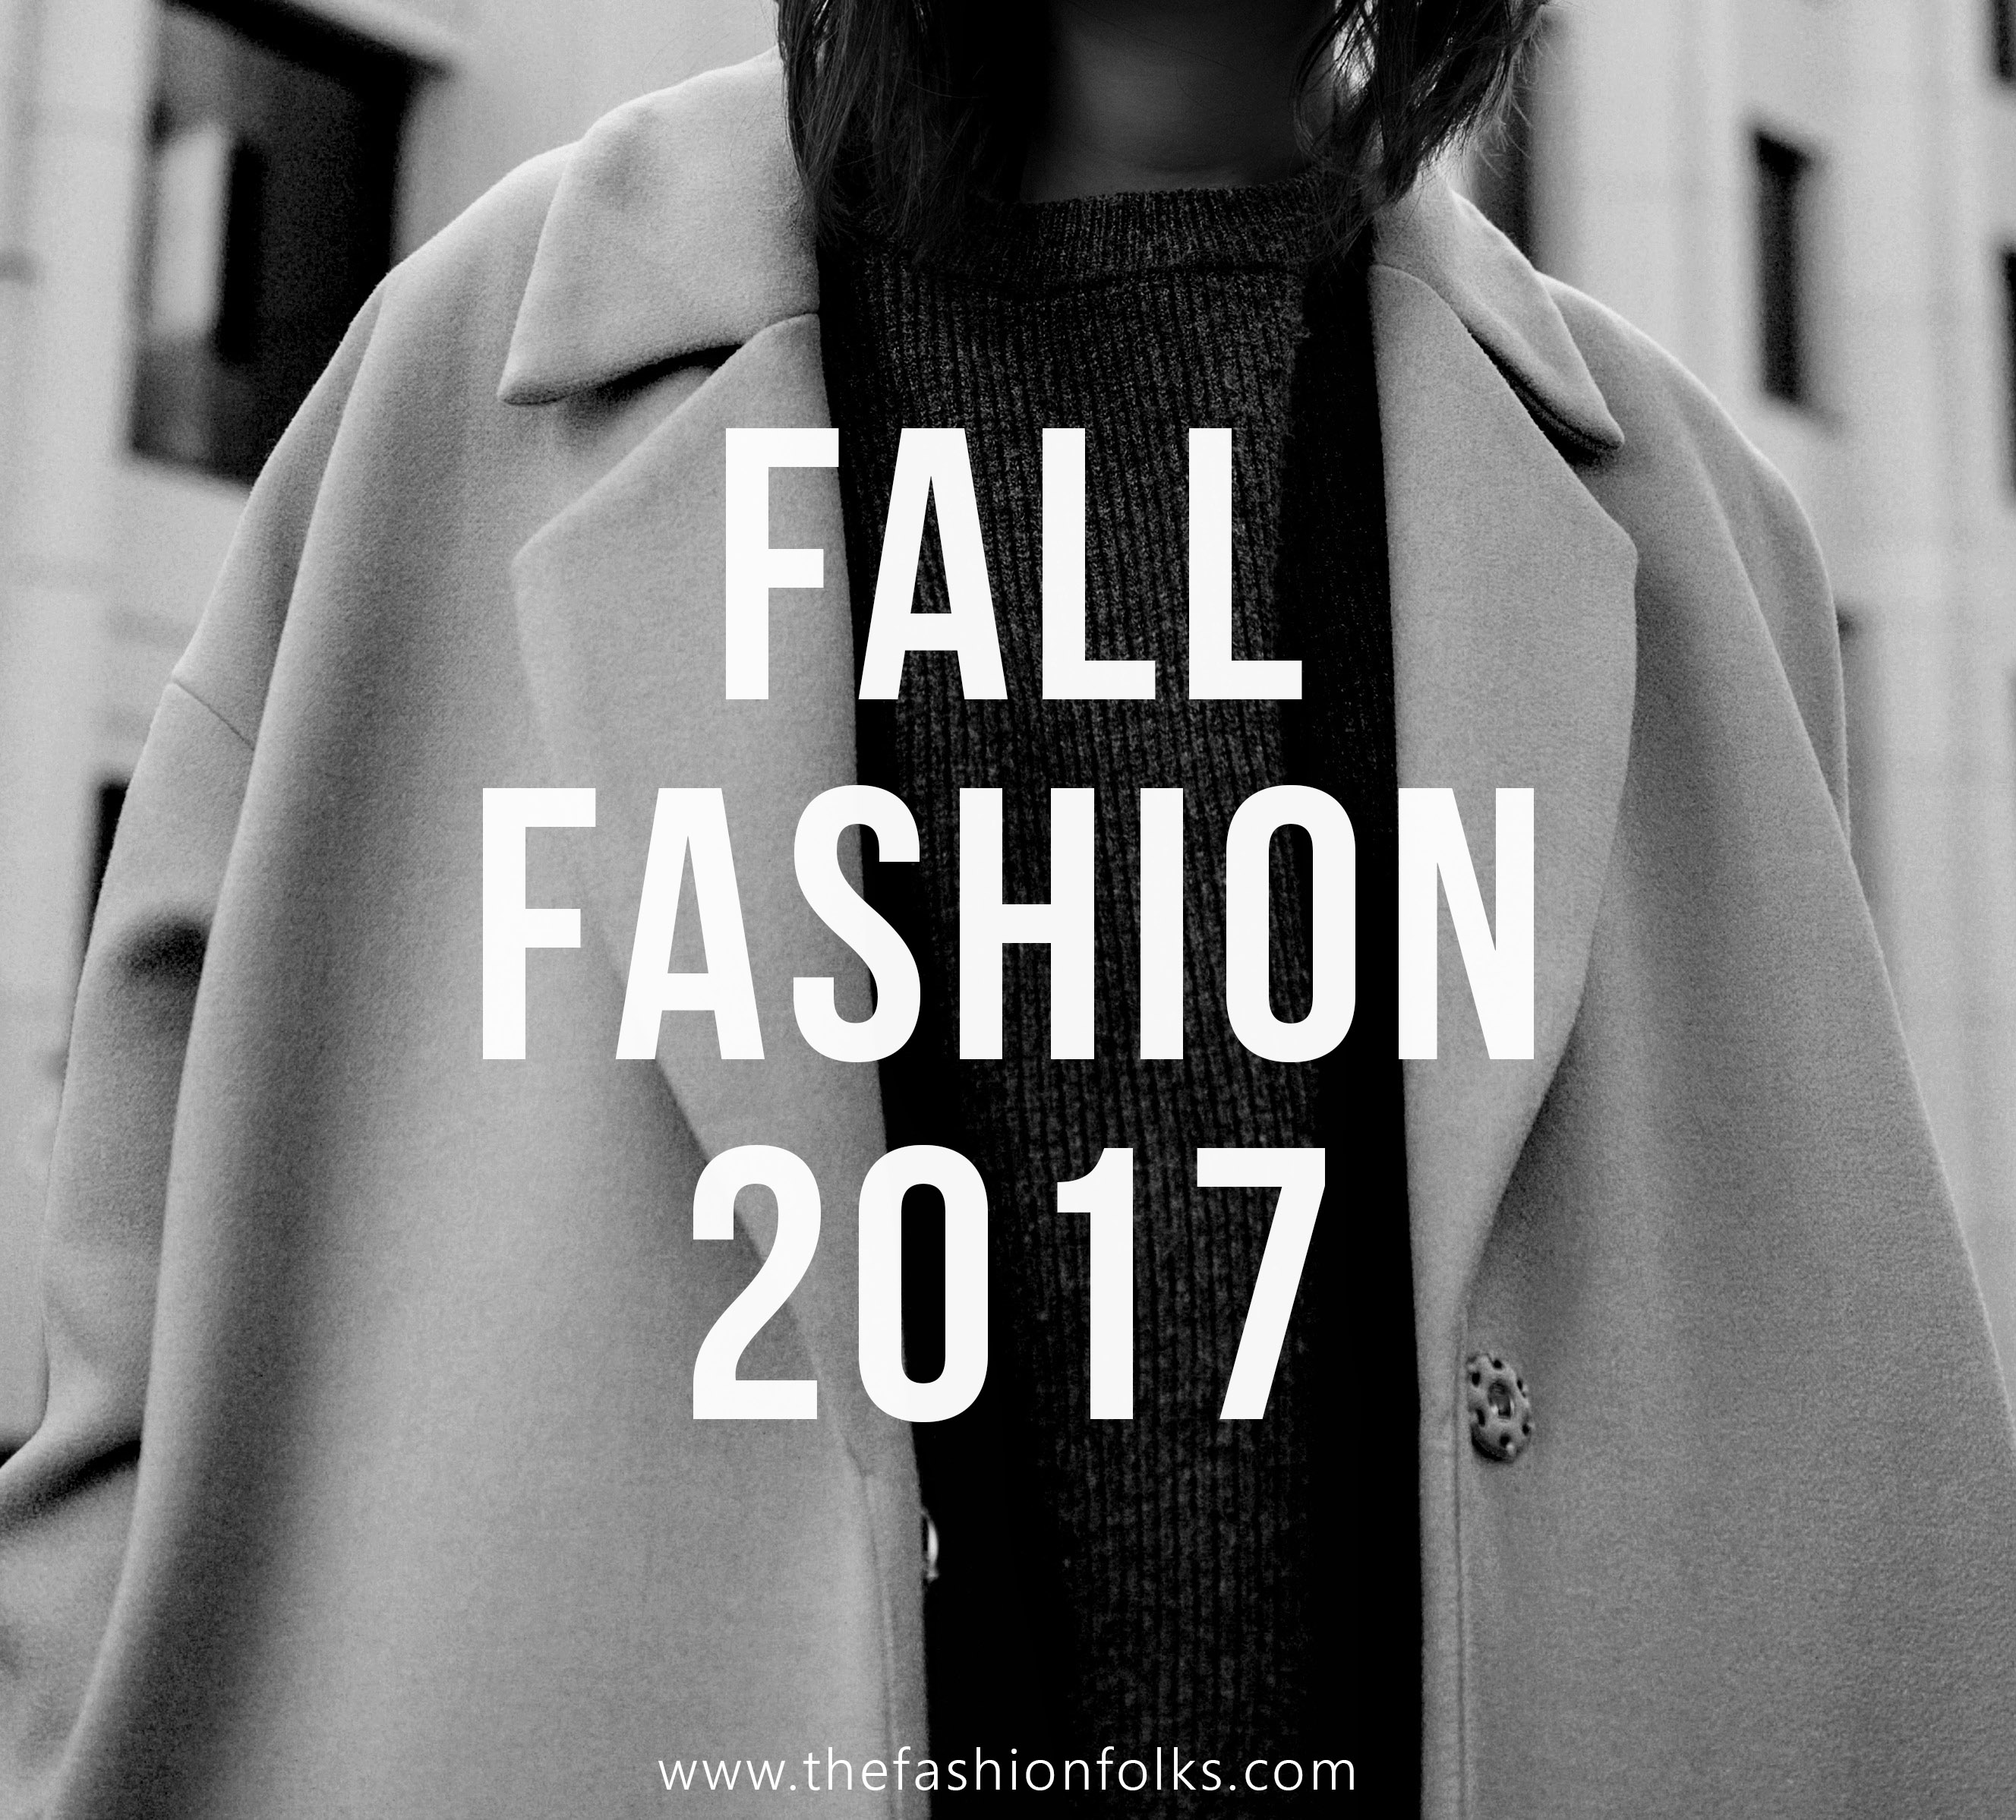 Fall Fashion 2017 - The Fashion Folks